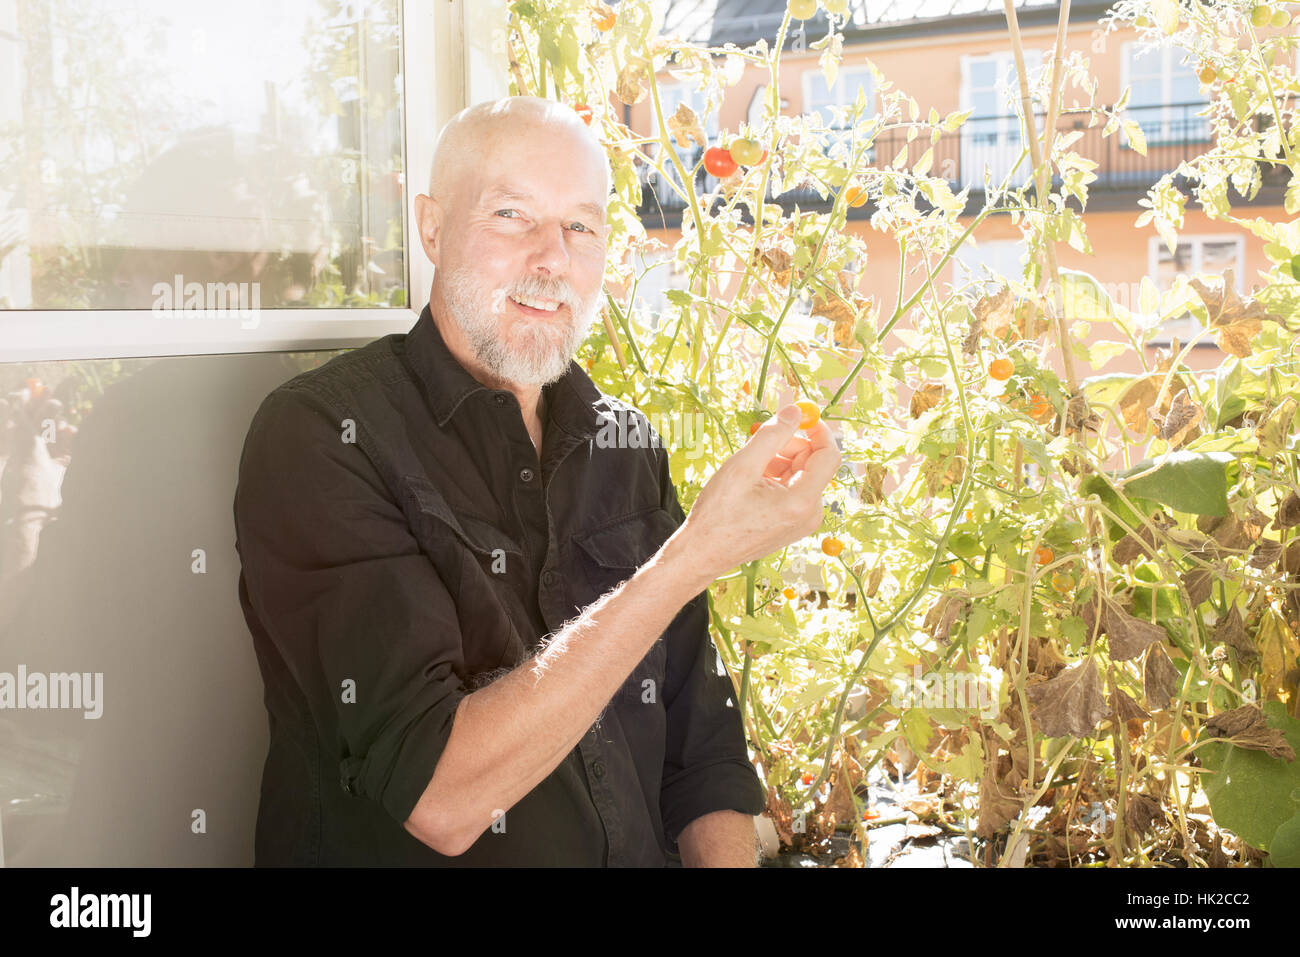 Viejo de jardinería, cuidado de plantas y vegetales en el balcón. Concepto de estilo de vida y verde jardín urbano. Foto de stock